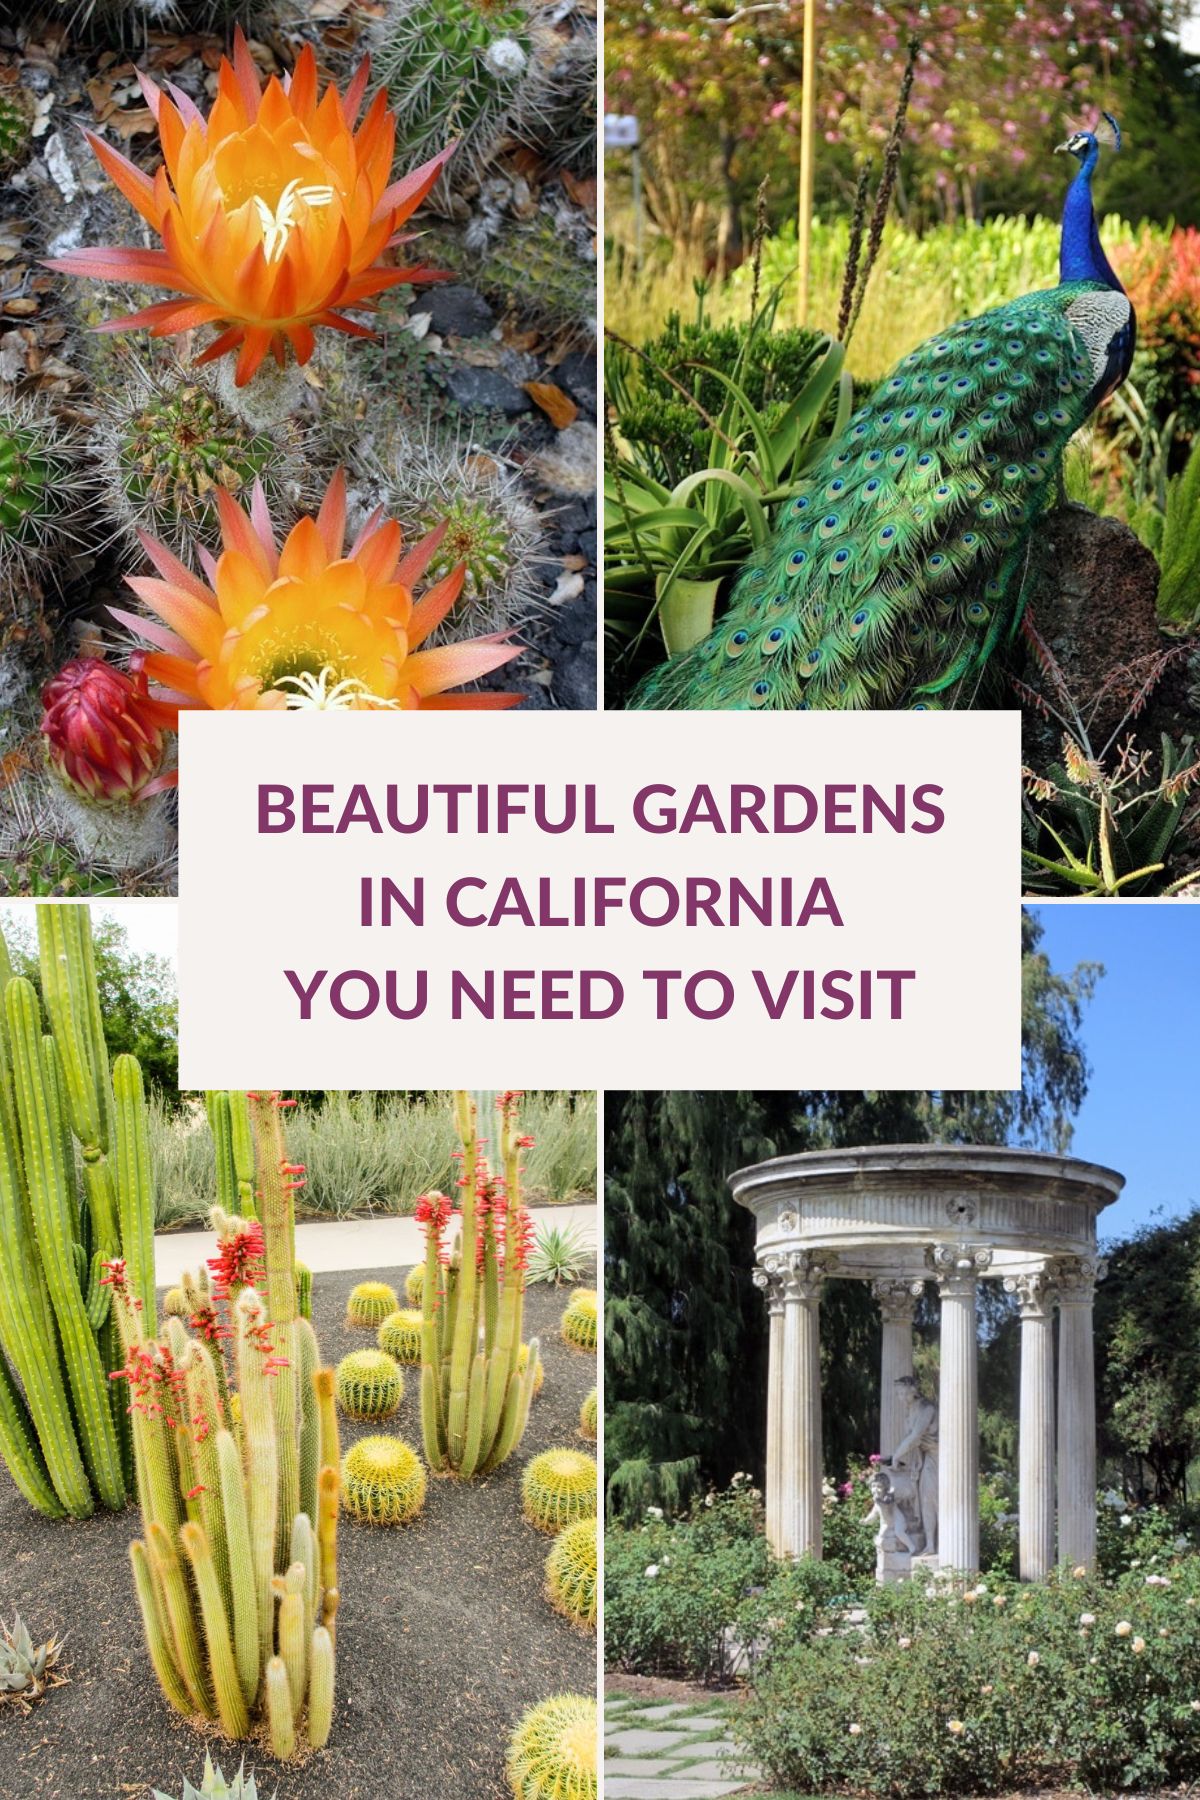  22 цудоўныя сады ў Каліфорніі, якія вам спадабаюцца